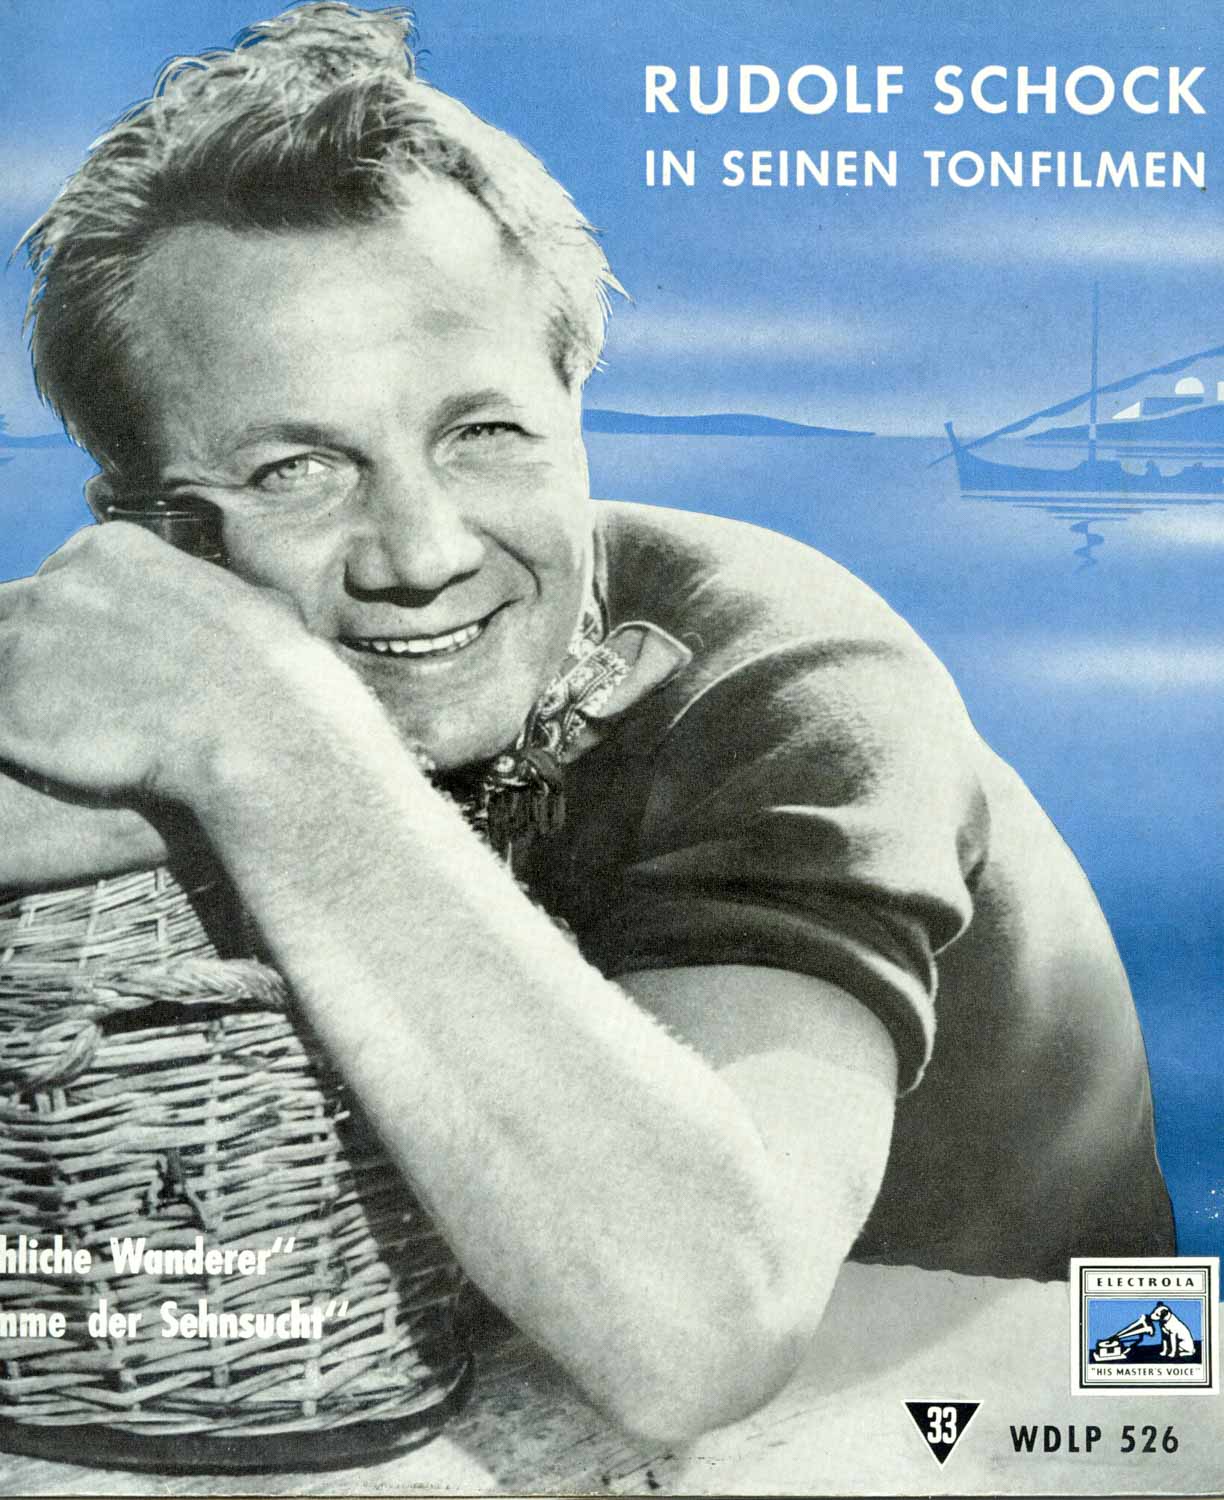 Rudolf Schock  Rudolf Schock in seinen Tonfilmen (WDLP 526)  *LP 10'' (Vinyl)*. 